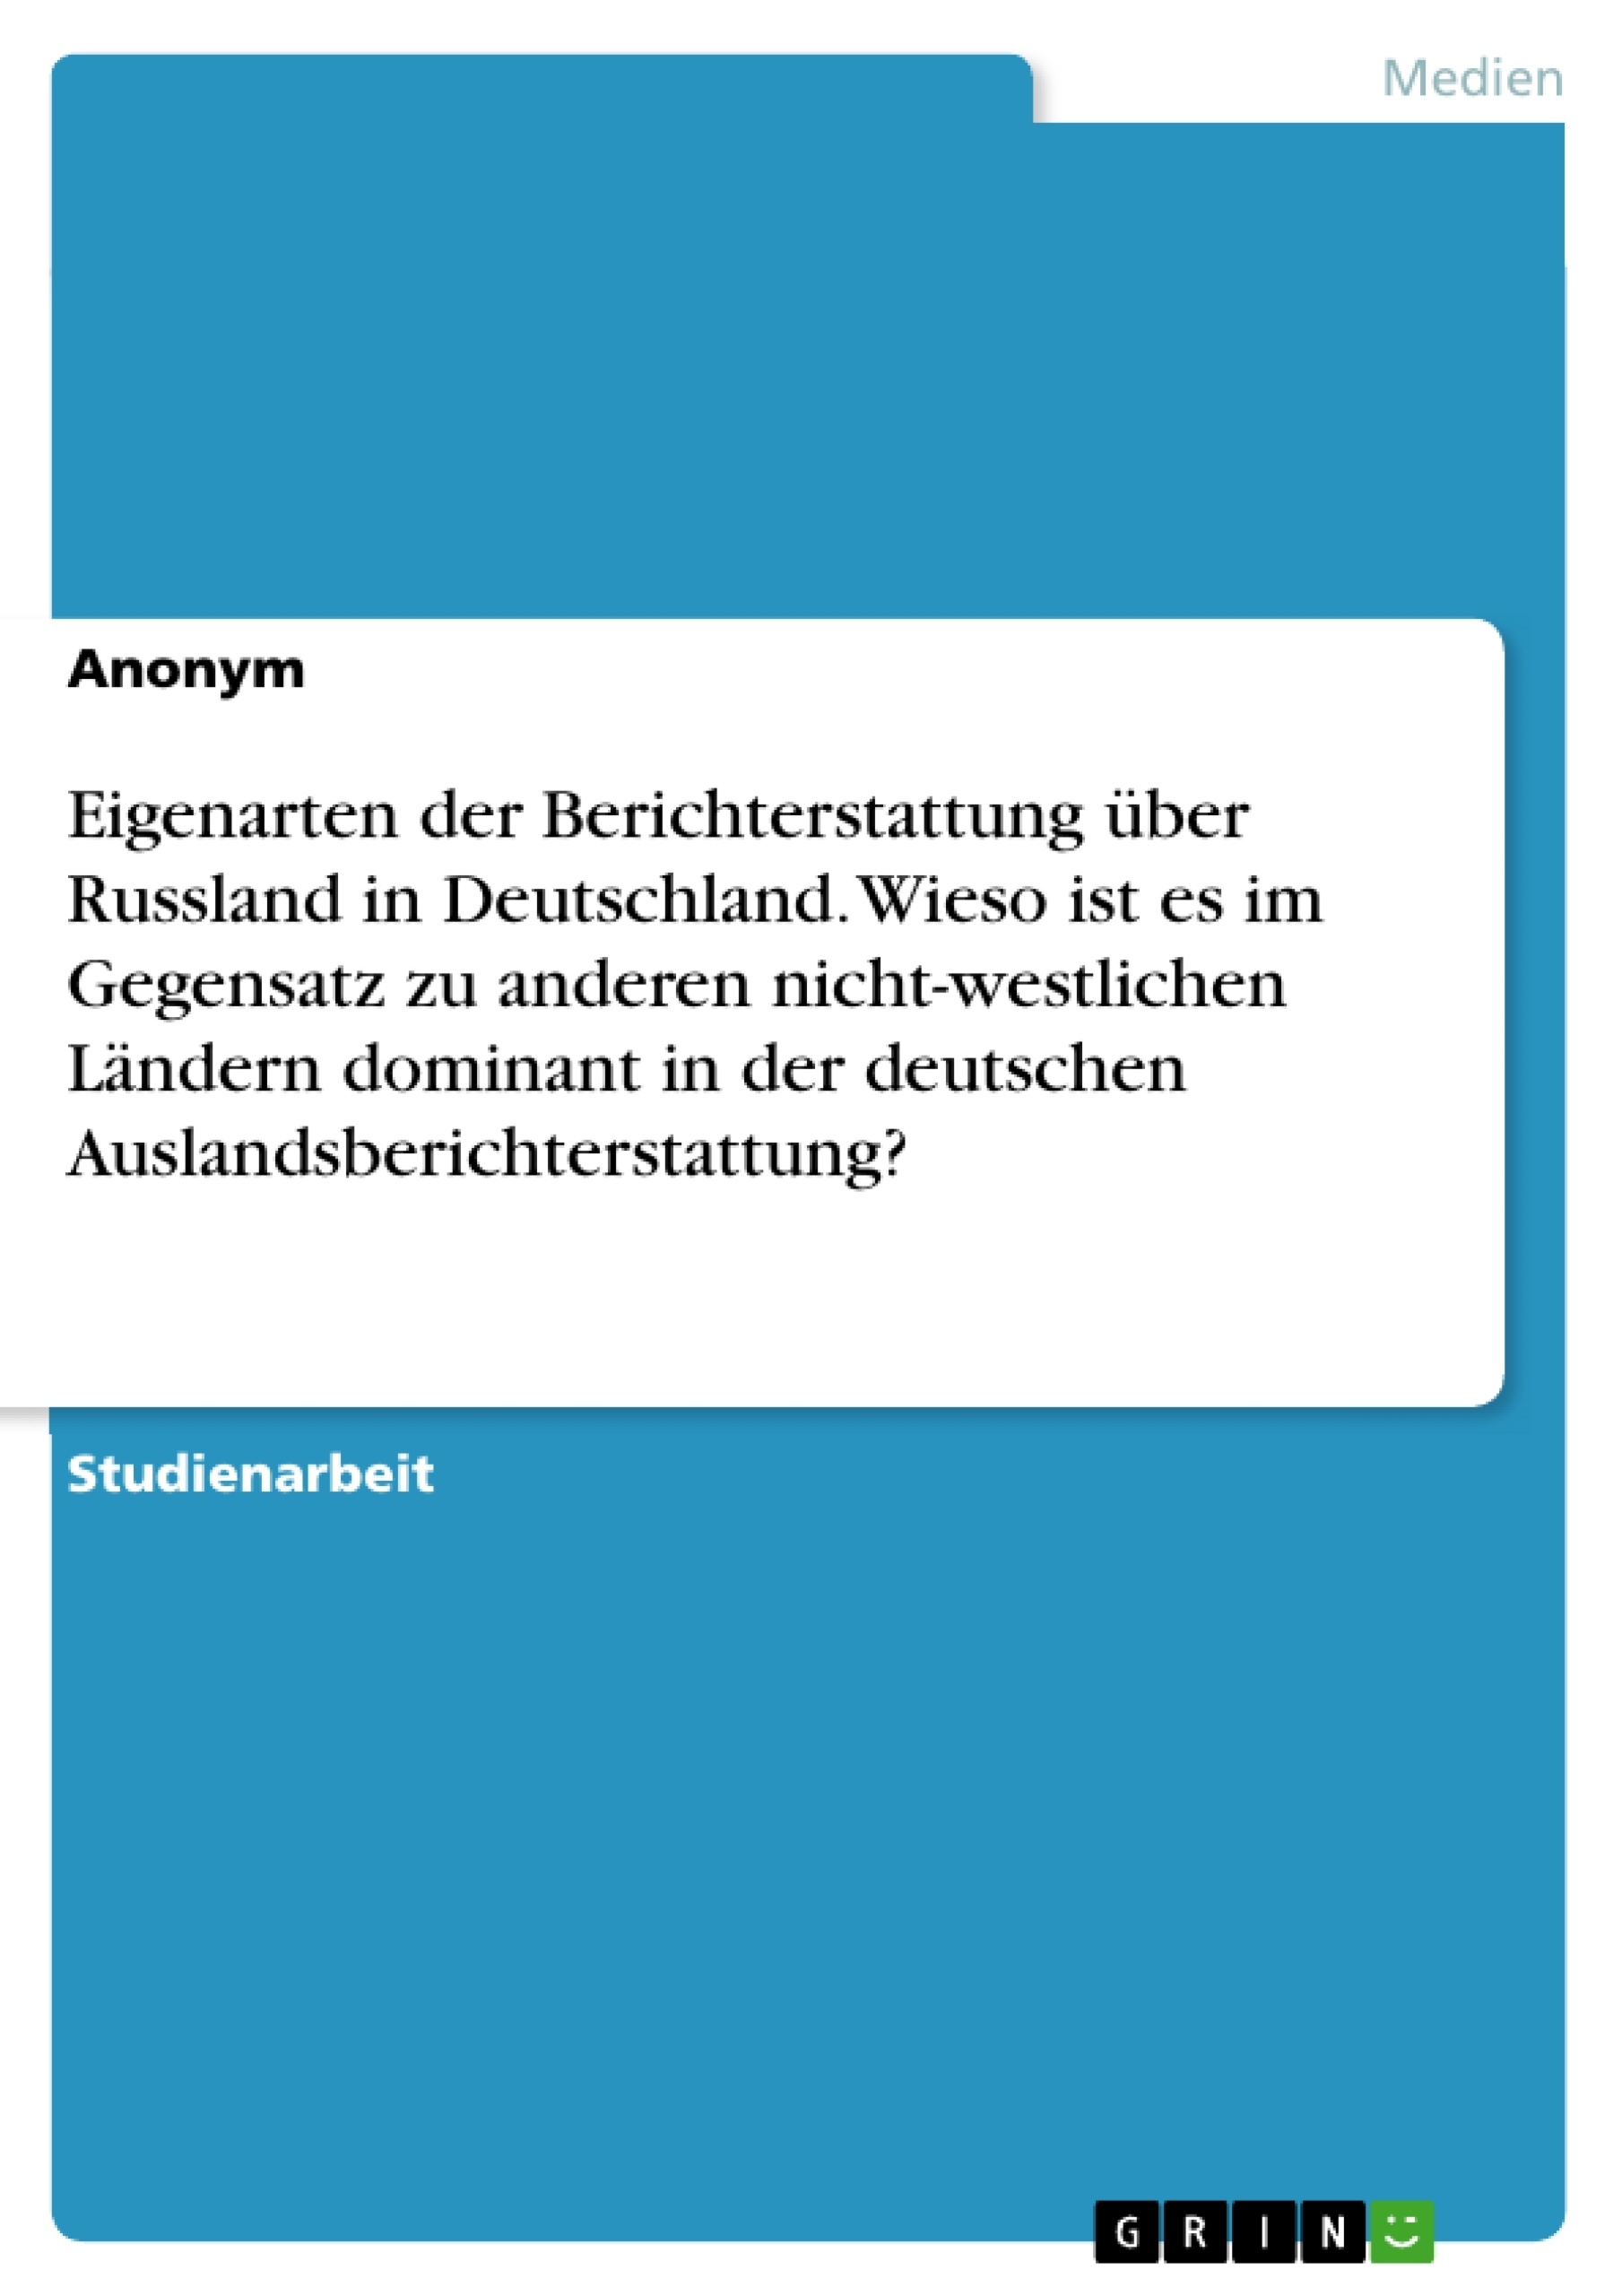 Título: Eigenarten der Berichterstattung über Russland in Deutschland. Wieso ist es im Gegensatz zu anderen nicht-westlichen Ländern dominant in der deutschen Auslandsberichterstattung?